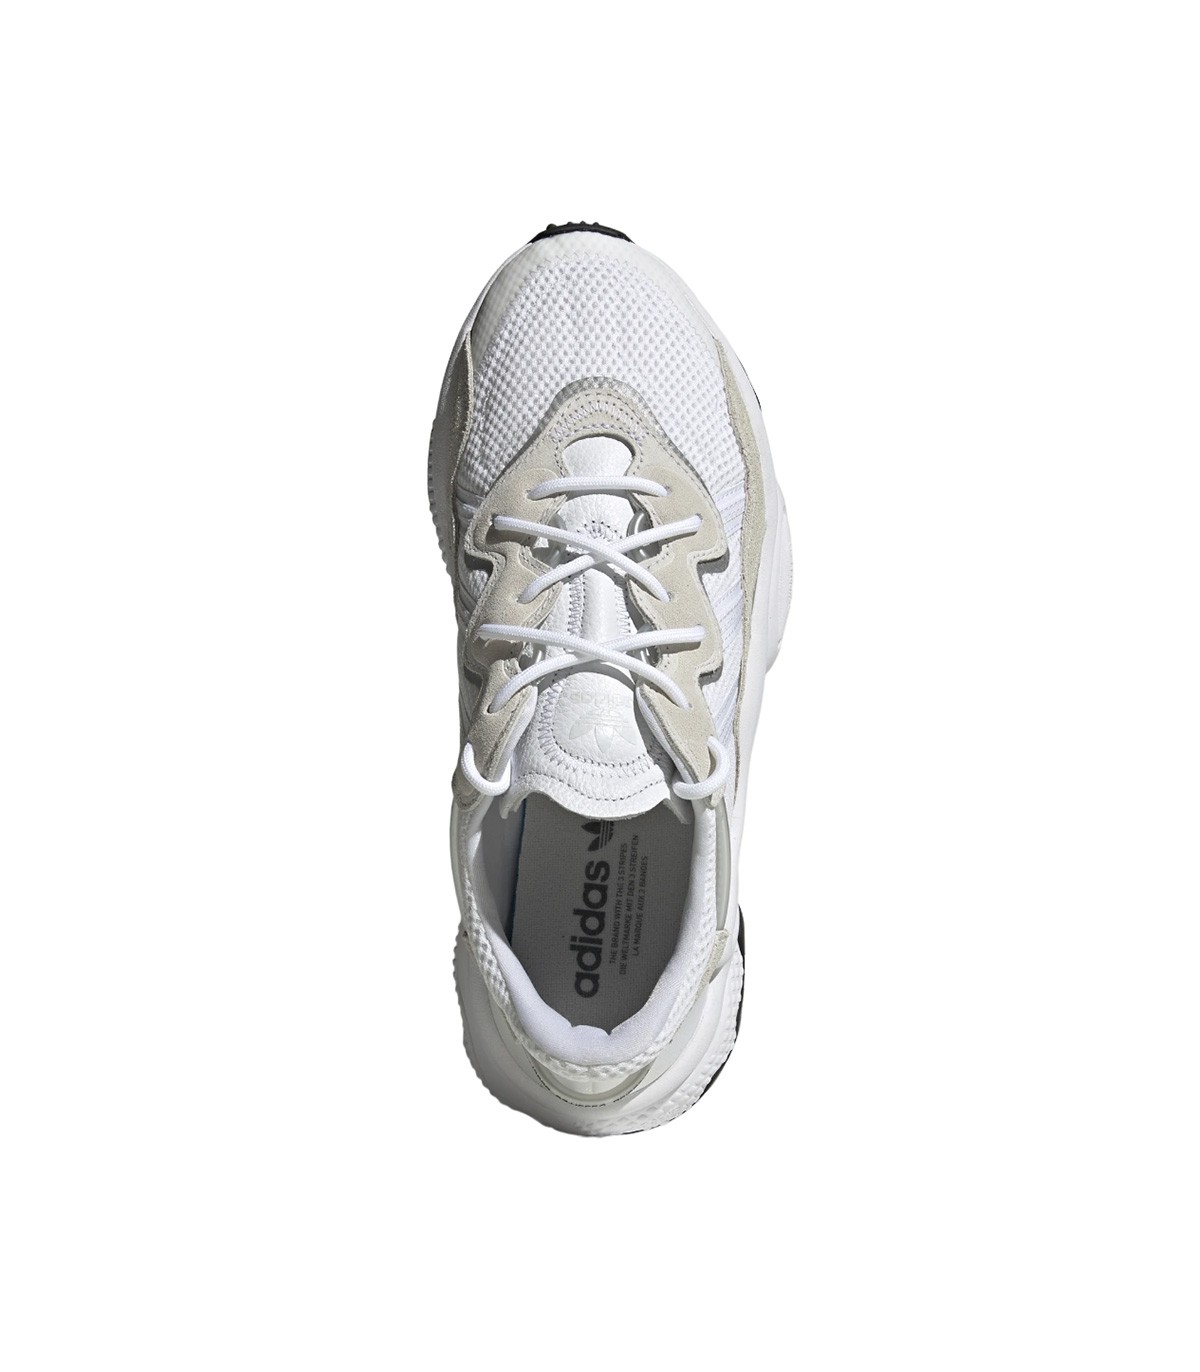 Magistrado Comprensión fingir Adidas Originals - Zapatillas Unisex Blancas - Talla 9.5 Color NEGRO